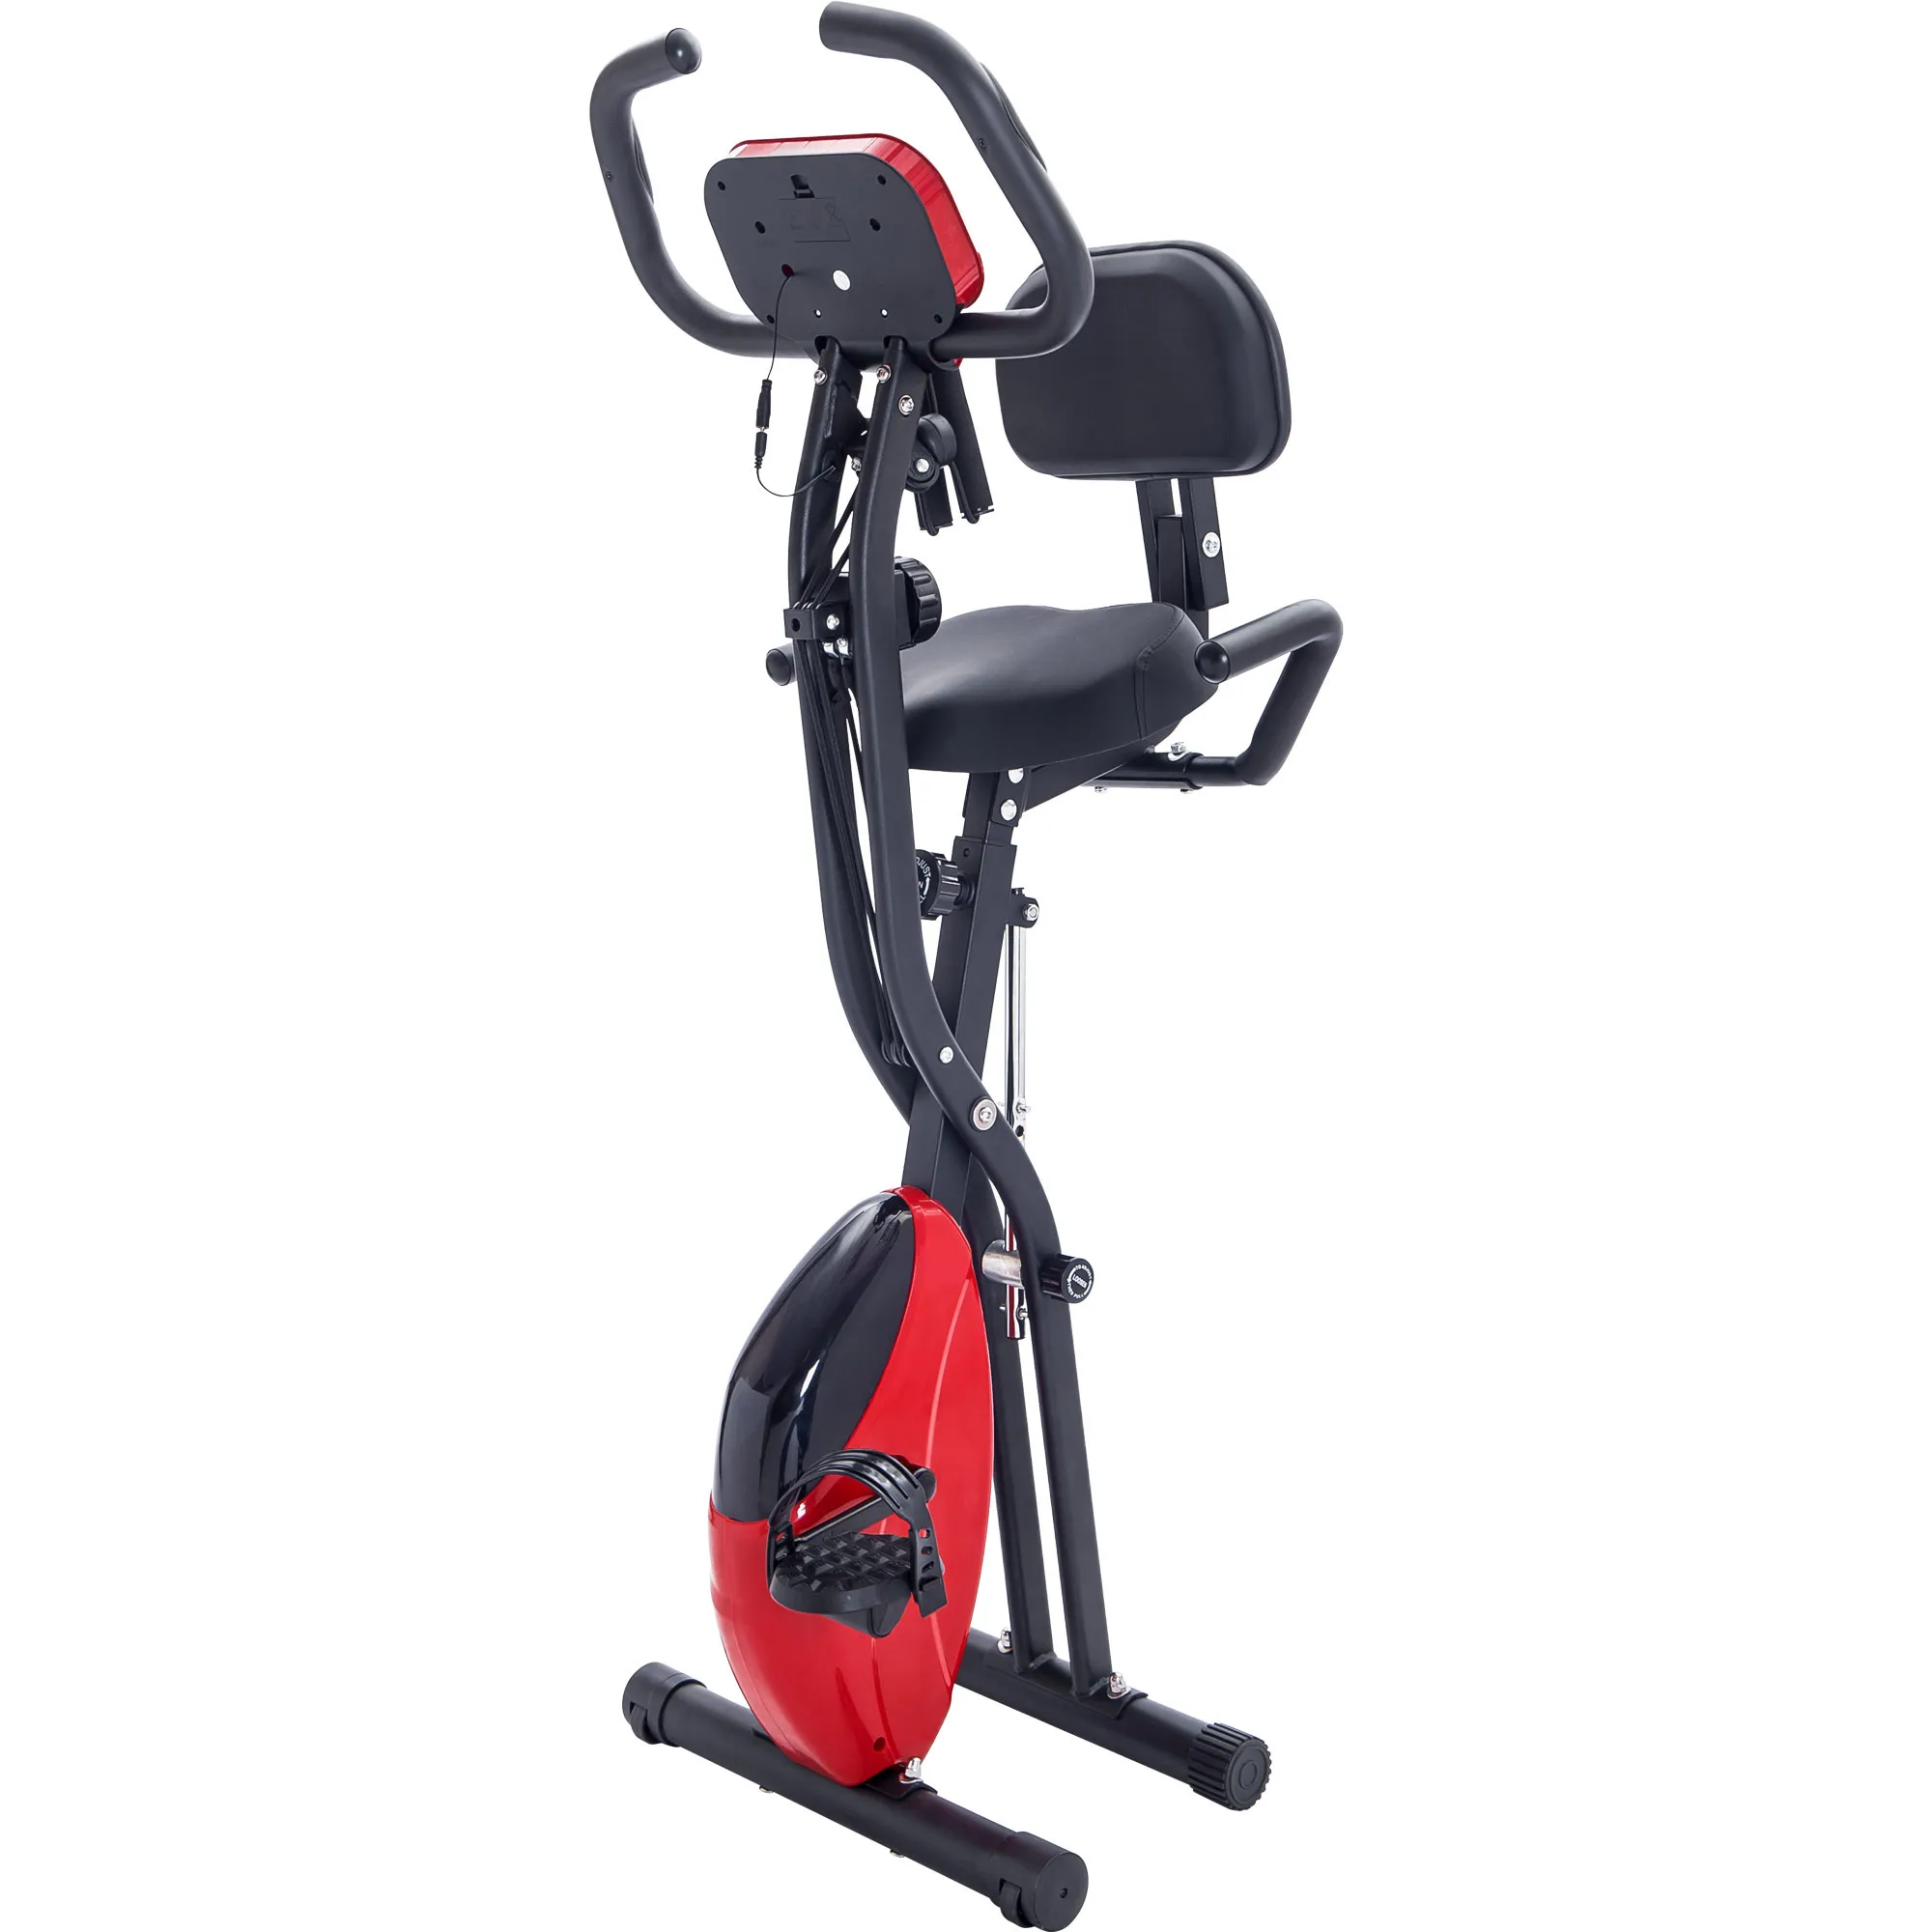 Bicicleta estática plegable, bicicleta estática vertical y reclinada con  resistencia ajustable de 10 niveles, bandas de brazo y respaldo